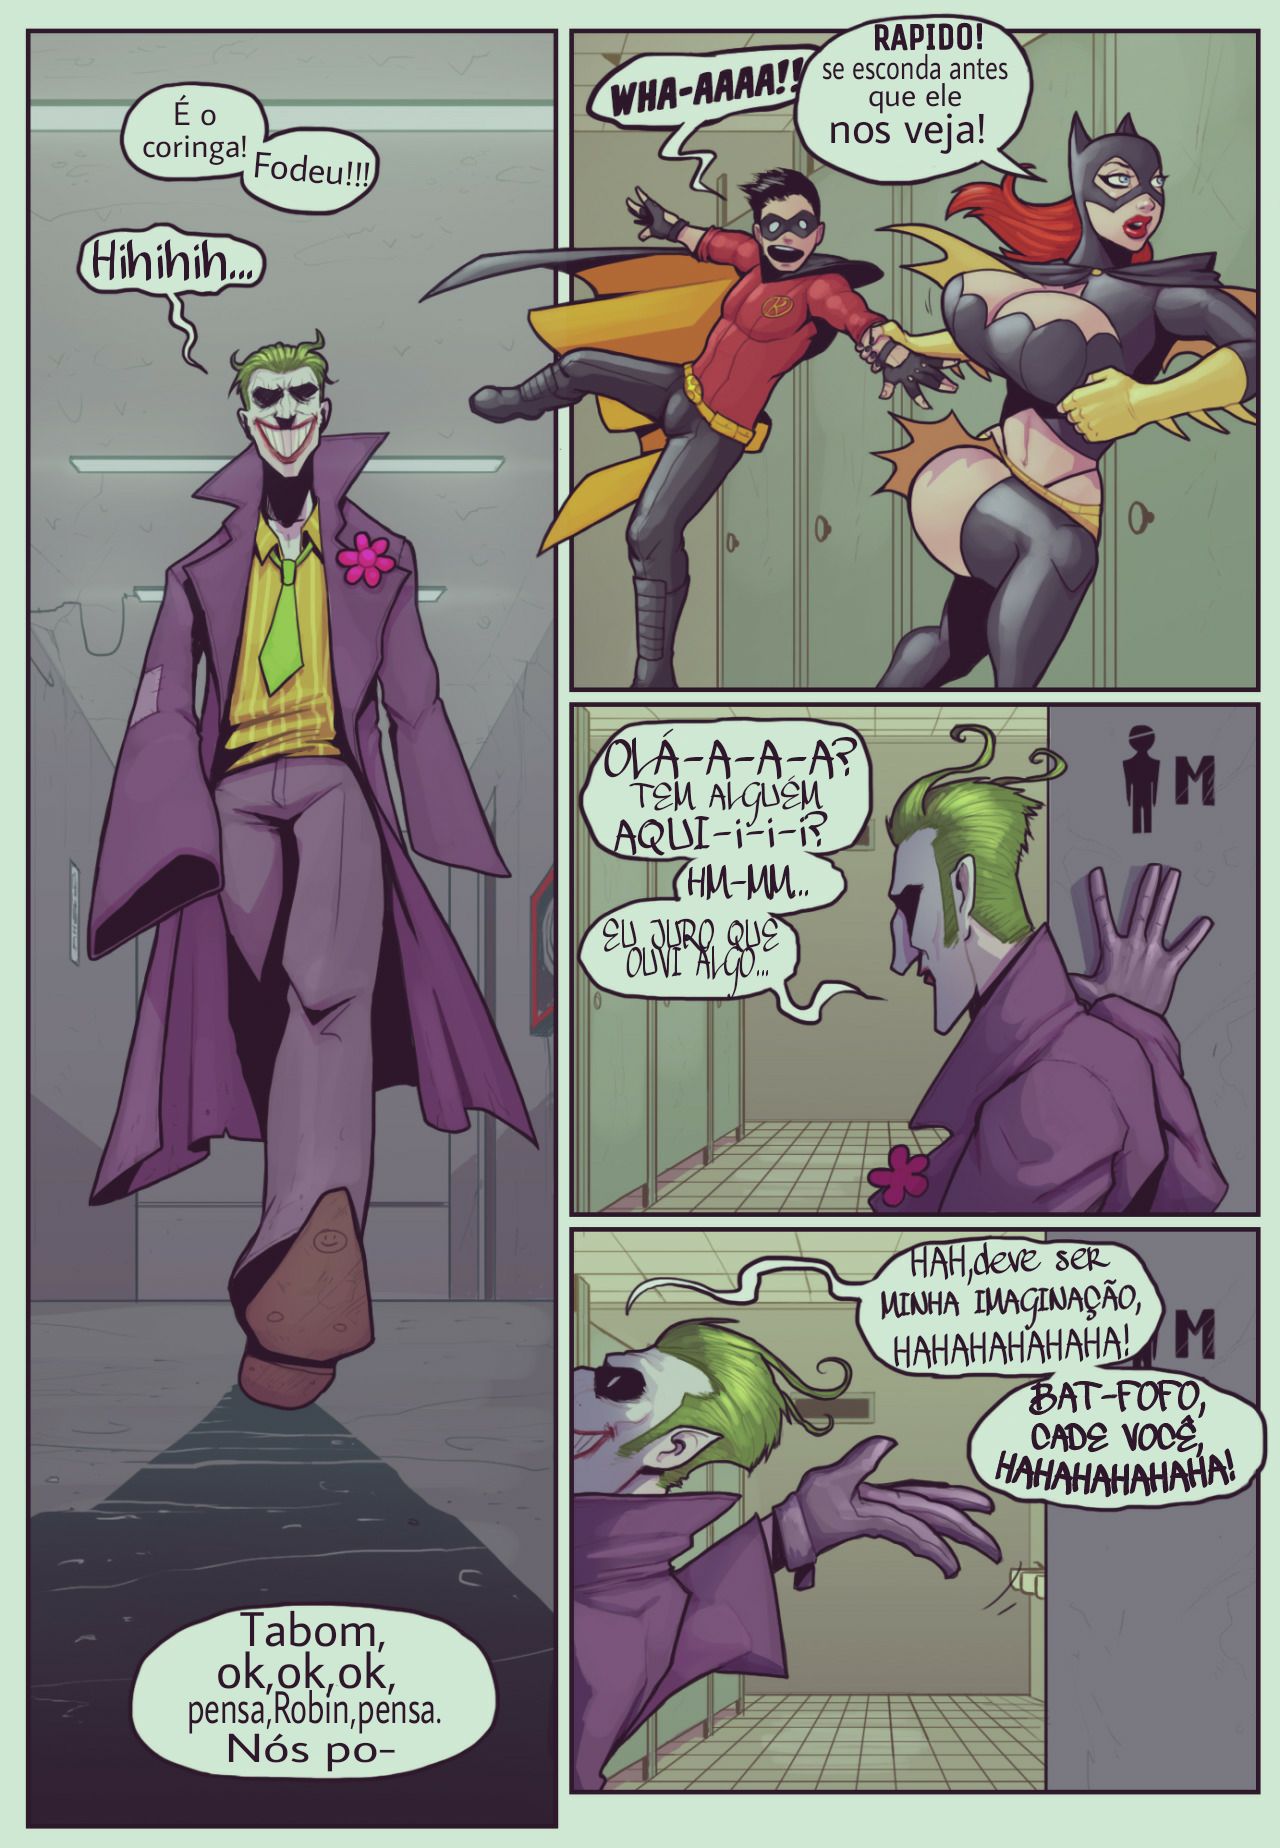 [DevilHS] Ruína em Gotham - Batgirl & Robin (Portuguese) [DevilHS] Ruined Gotham - Batgirl loves Robin (English) 4